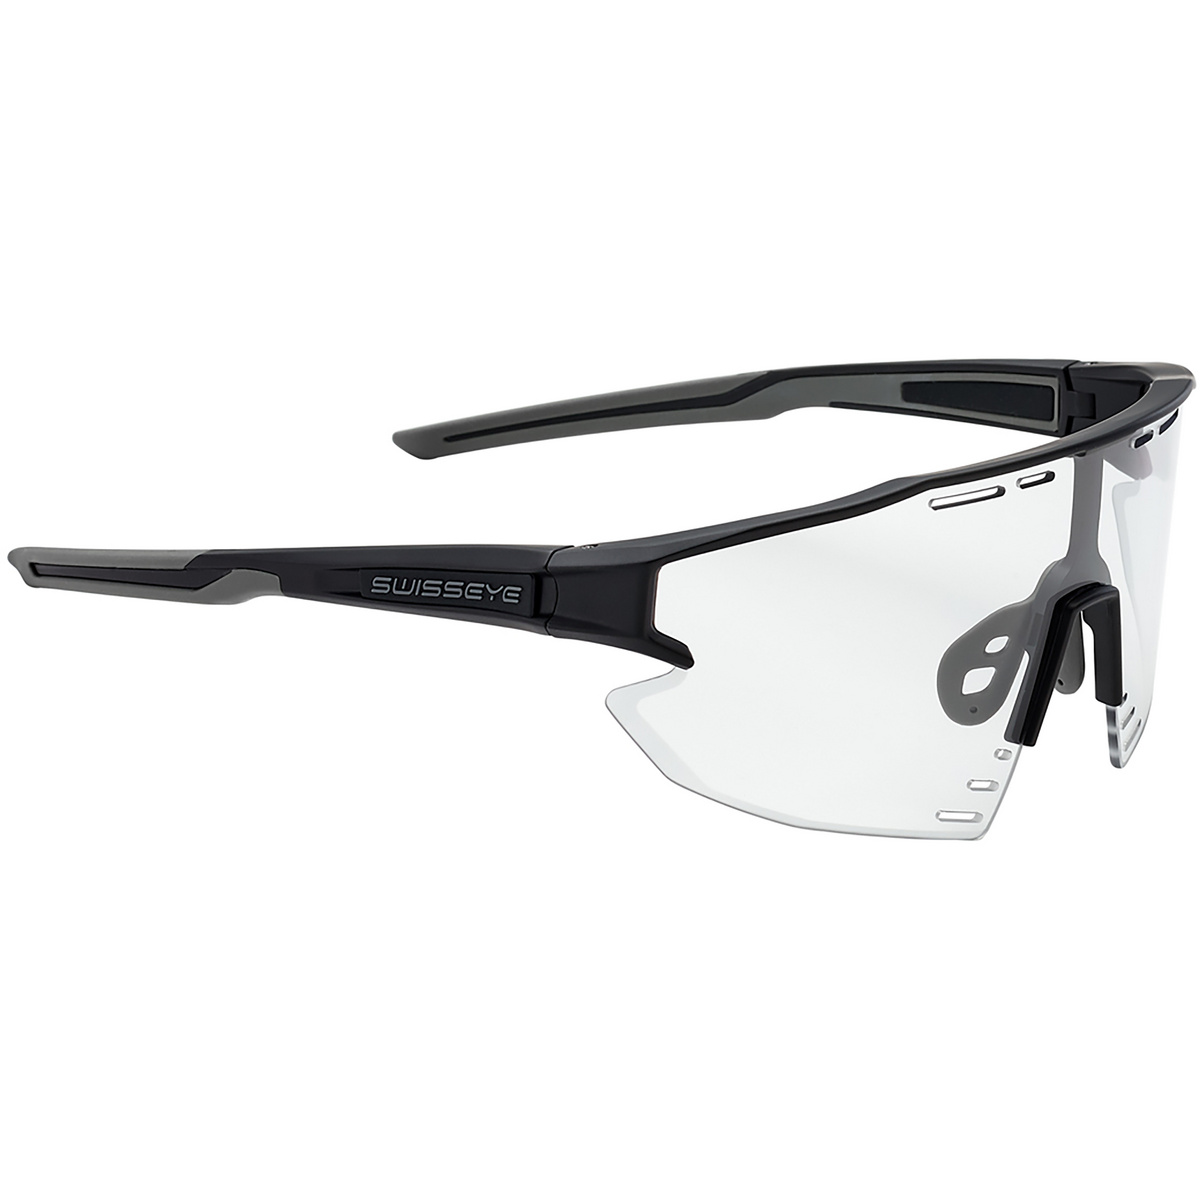 Swiss Eye Arrow Sportbrille (Größe One Size, schwarz)